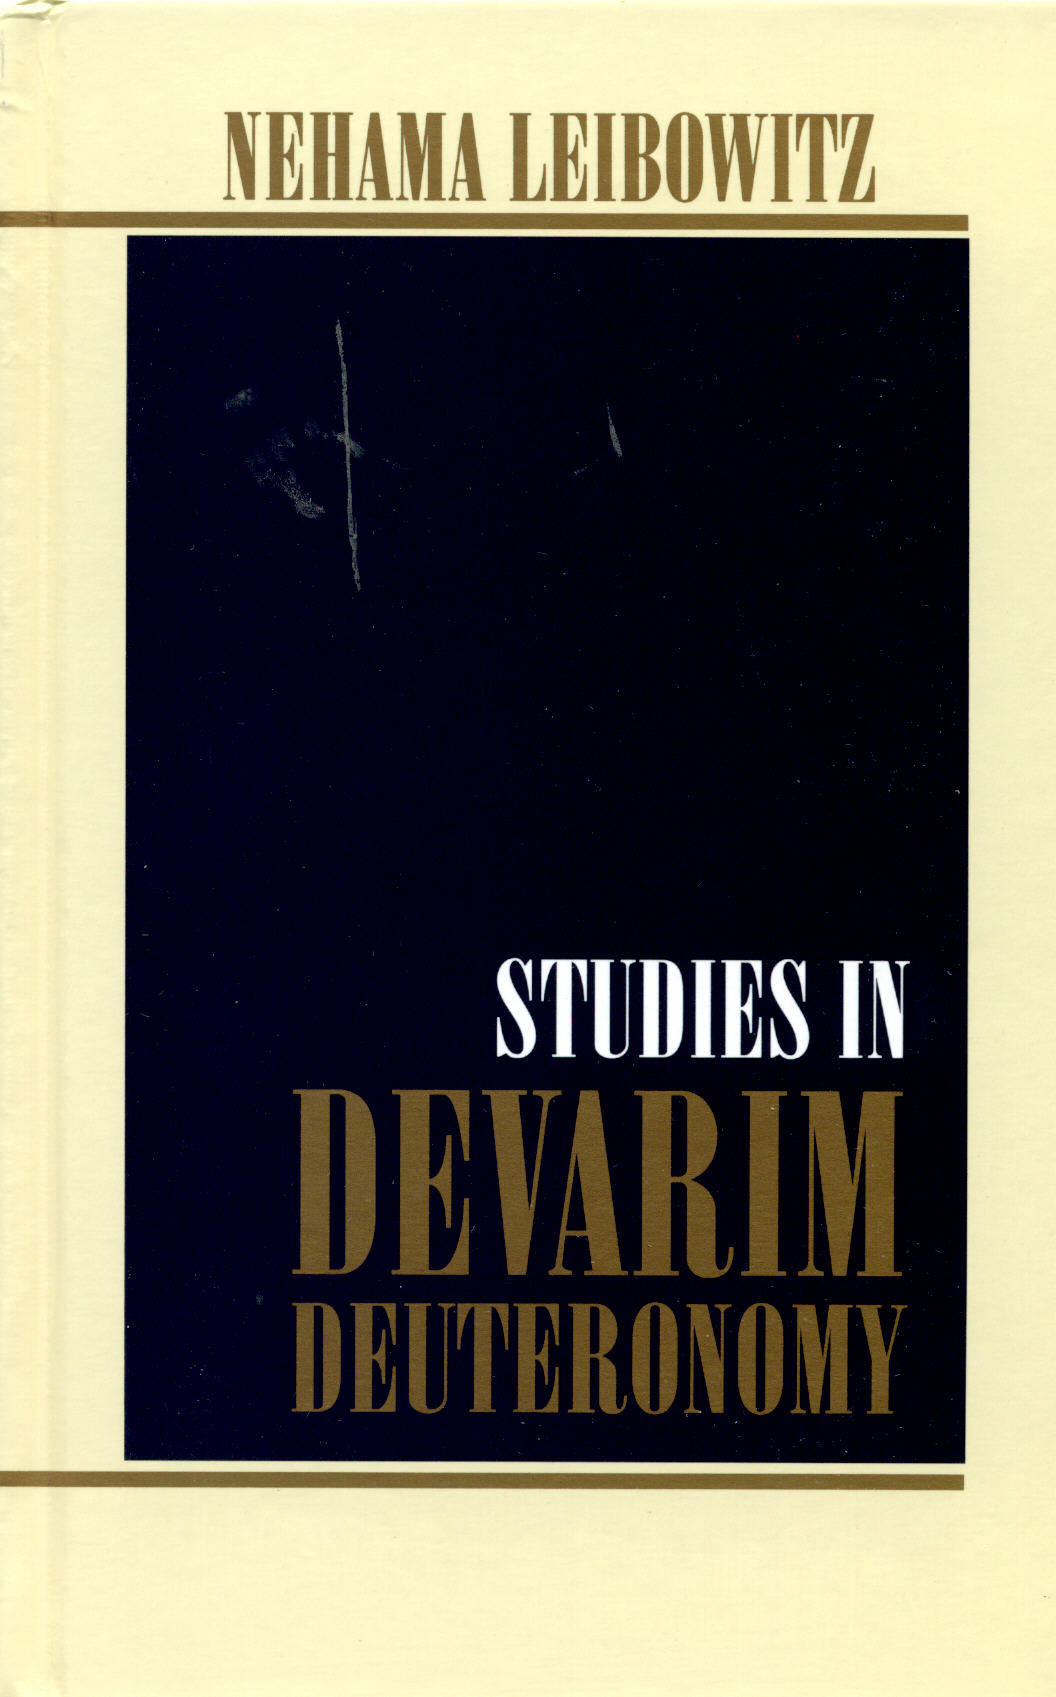 New Studies in Devarim (Deuteronomy)